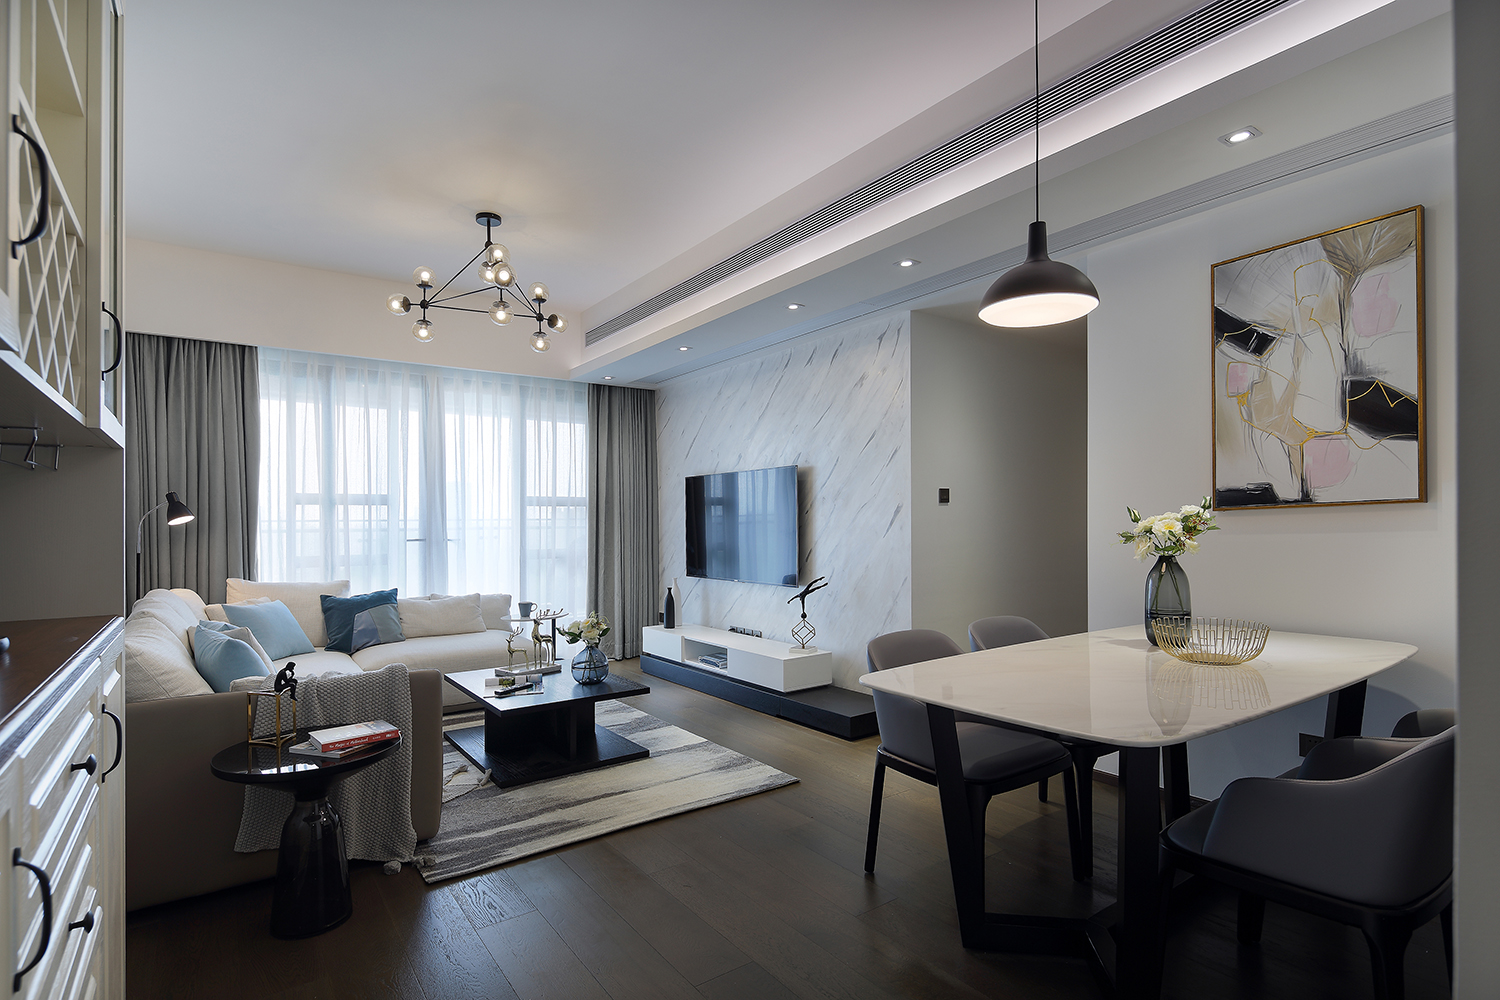 深圳知名设计公司漾设计精装房改造案例《纯粹》